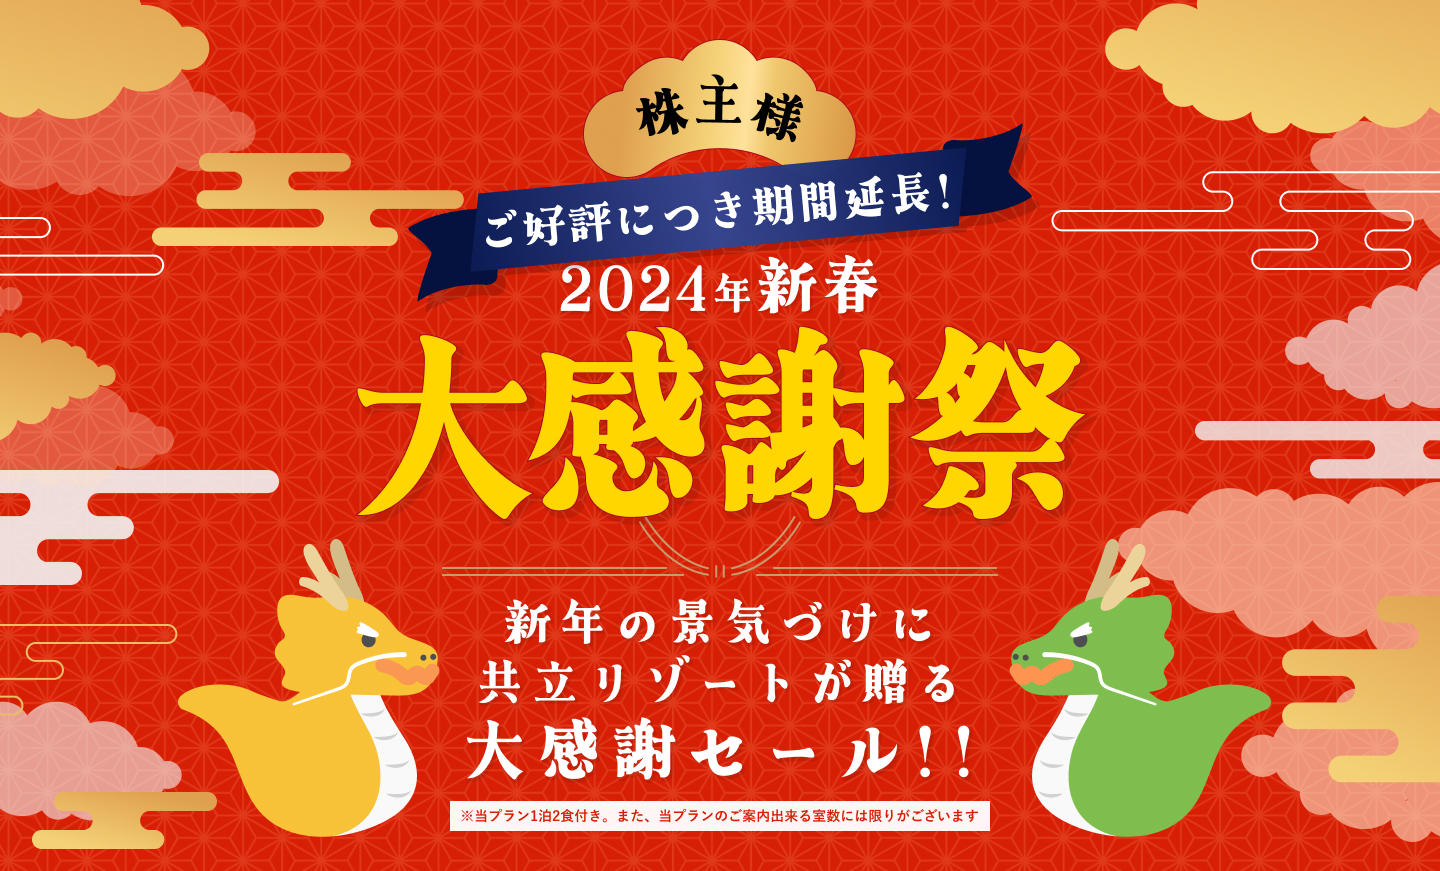 2024年新春大感謝祭新年の景気づけに共立リゾートが贈る大感謝セール!!